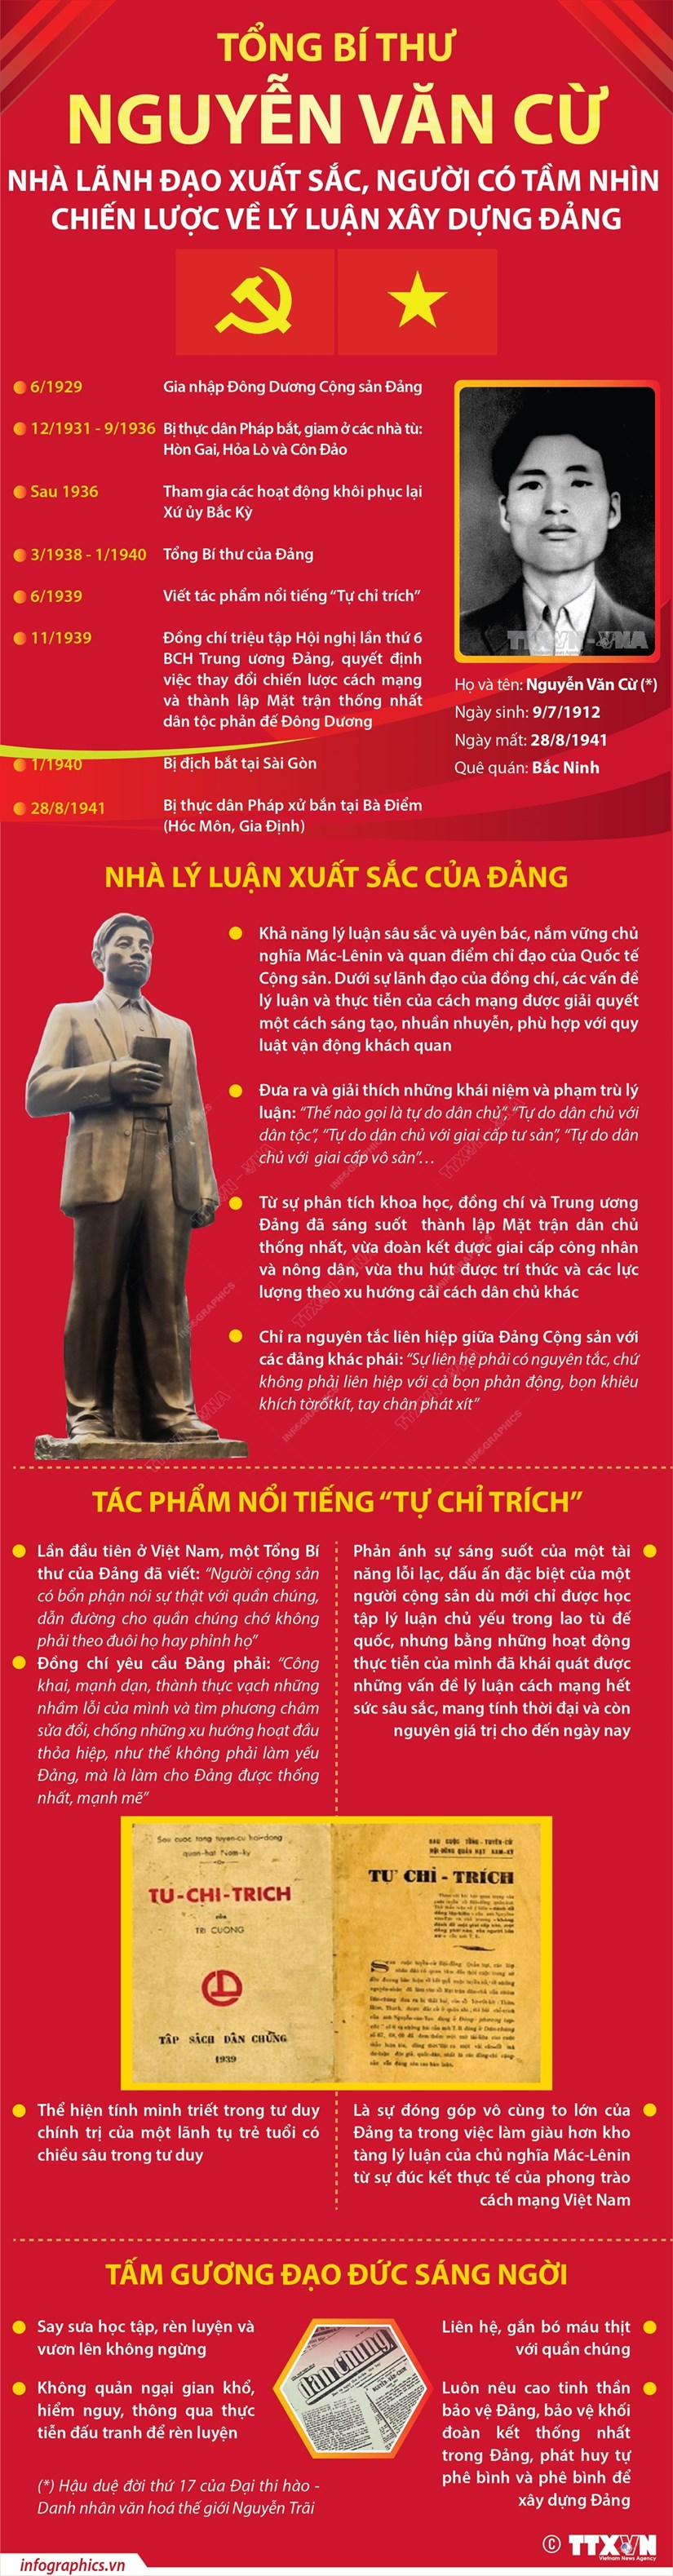 Tổng Bí thư Nguyễn Văn Cừ - nhà lãnh đạo xuất sắc